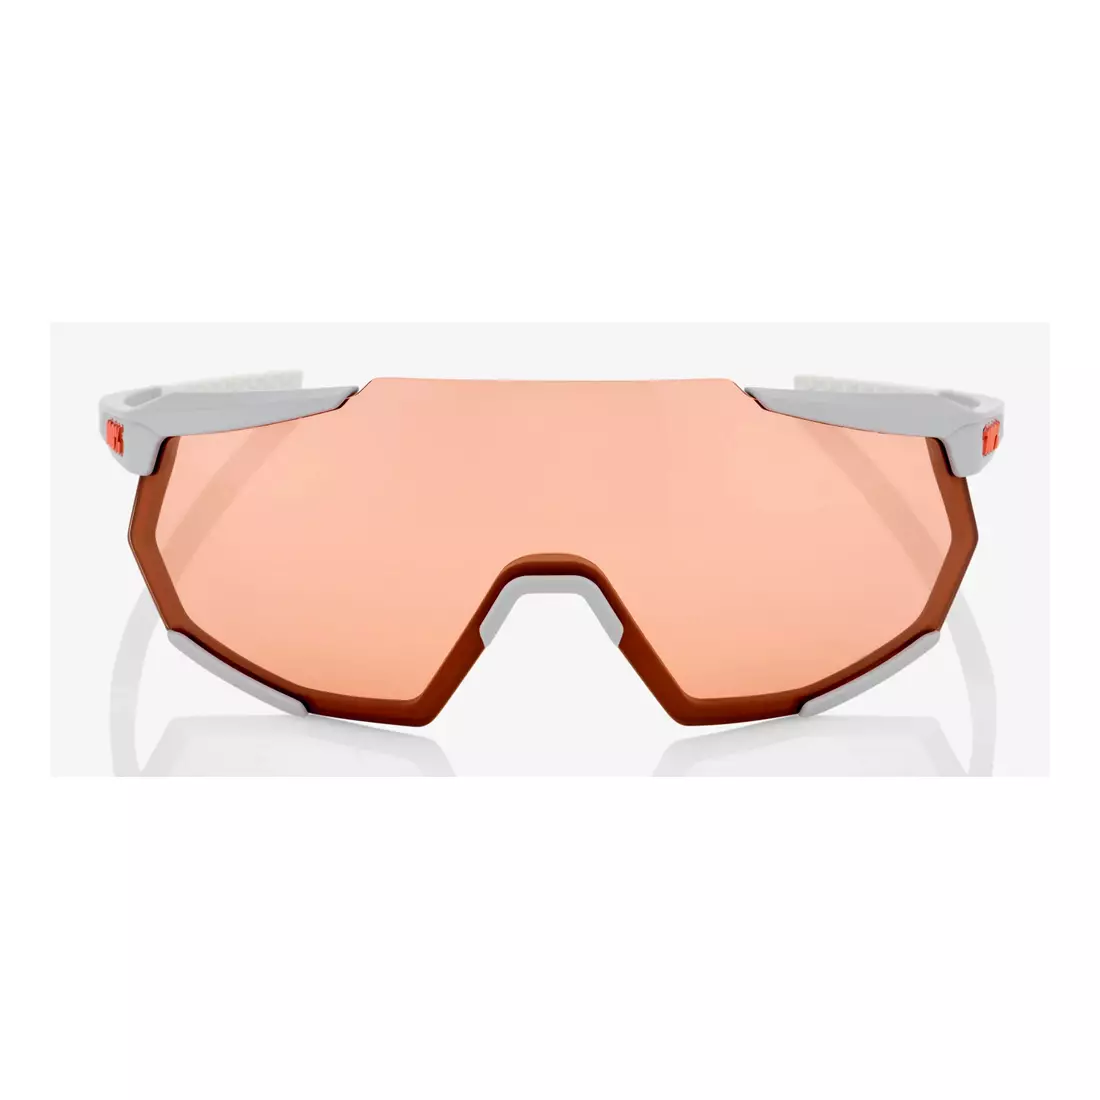 100% sportovní brýle RACETRAP (korálové sklo, LT 52% + průhledné sklo, LT 93%) soft tact stone grey STO-61037-289-79